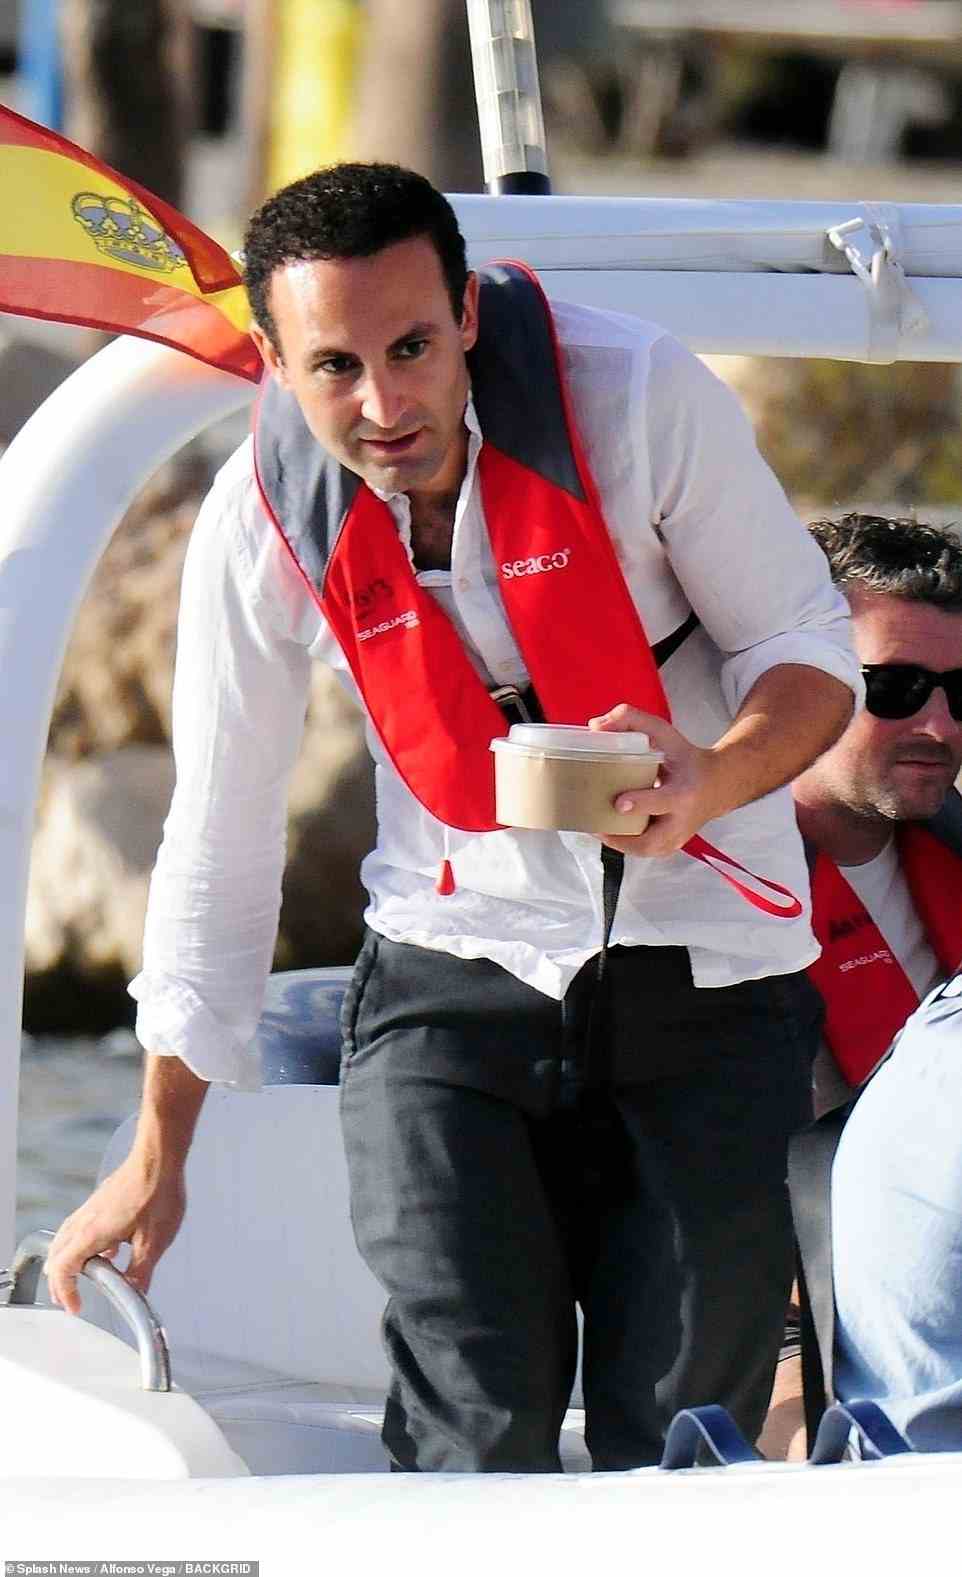 Der Schauspieler verließ das Schmuddelboot, um sein Mittagessen auf der Promenade mit den anderen Besatzungsmitgliedern zu genießen, die anscheinend mit Gepäck warteten